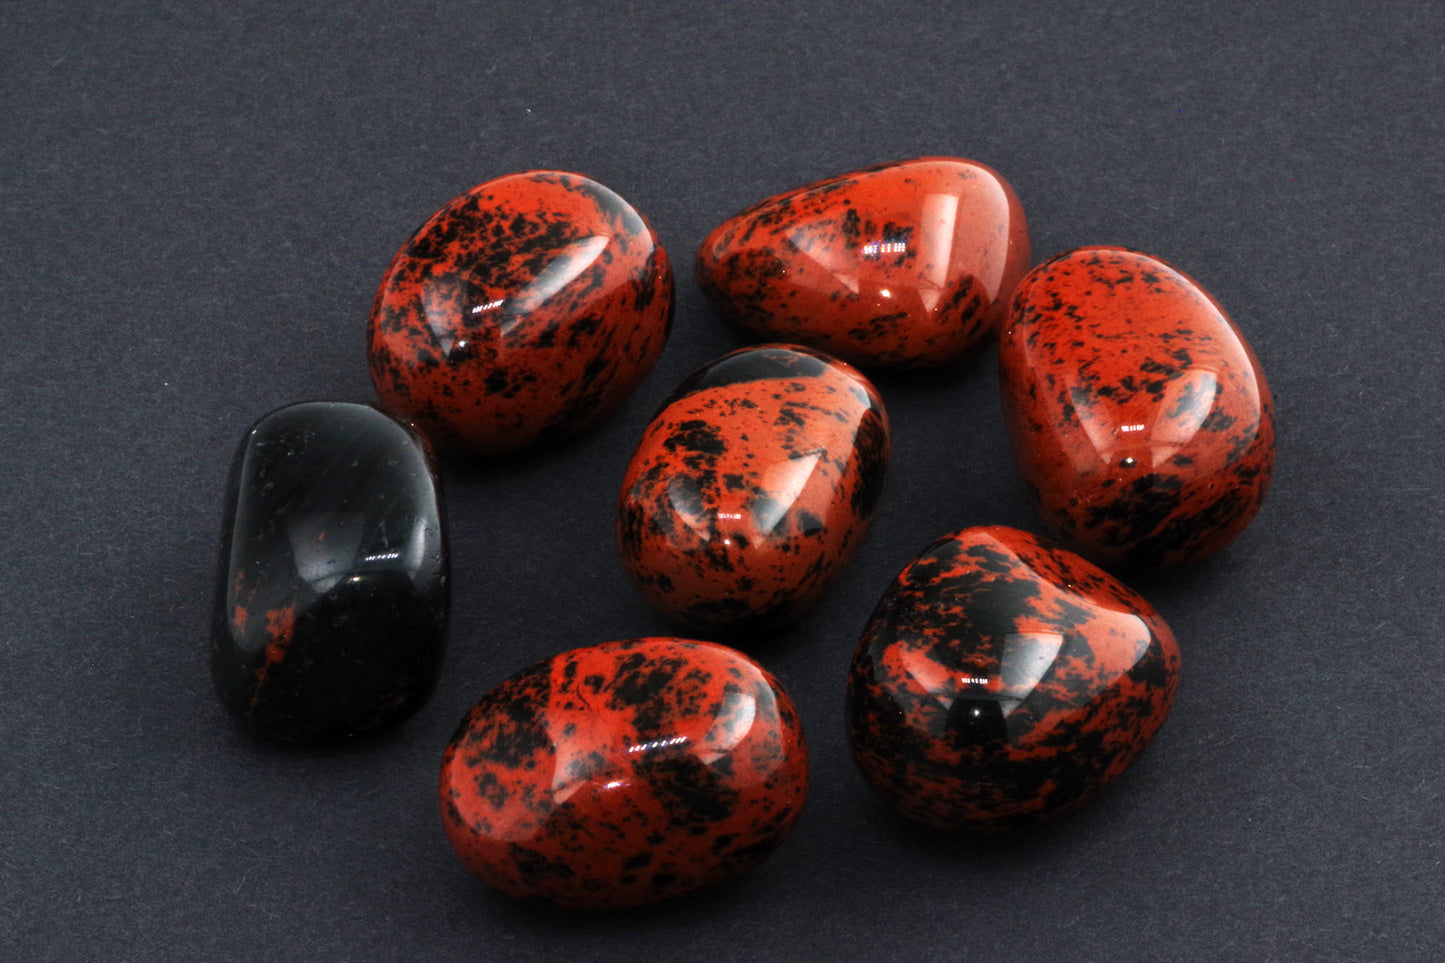 Mahogany obsidian